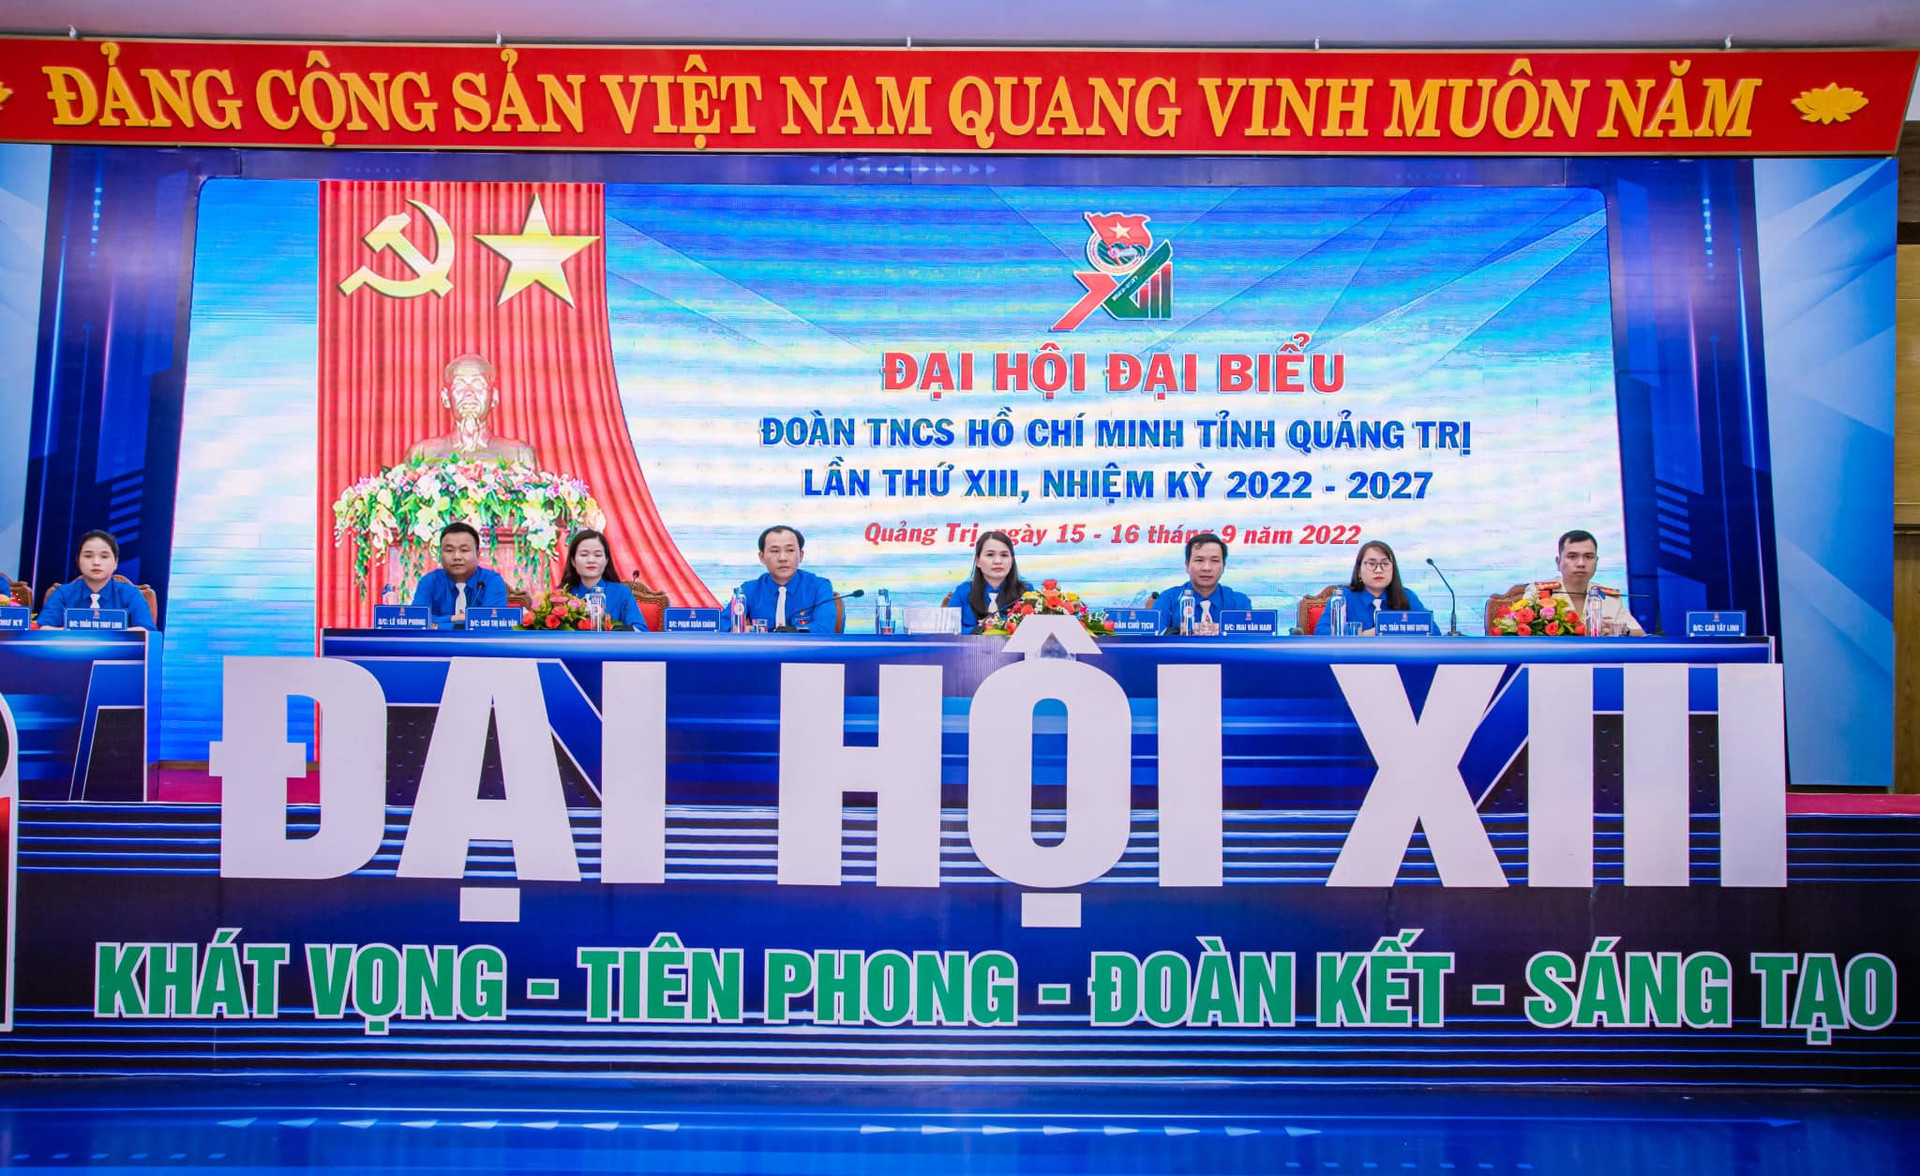 Đại hội đại biểu Đoàn TNCS Hồ Chí Minh tỉnh Quảng Trị lần thứ XIII, nhiệm kỳ 2022 - 2027 diễn ra từ 15 - 16/9.